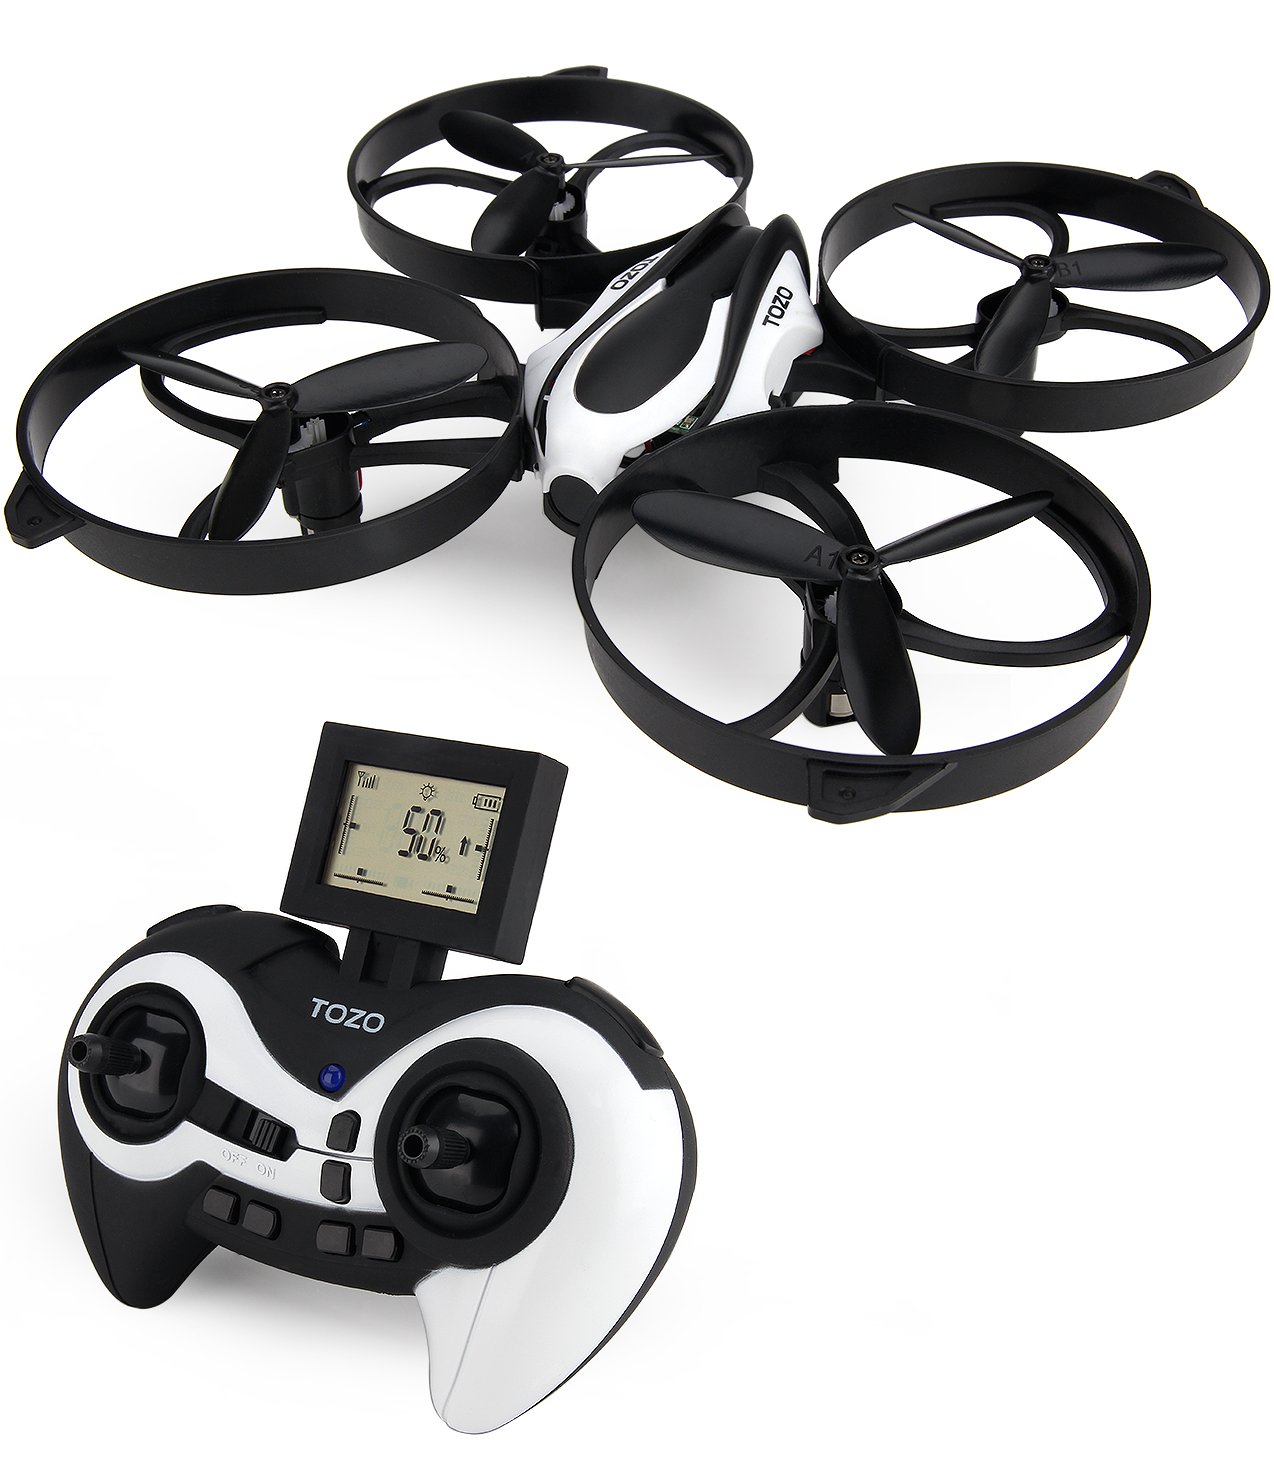 Thiết bị bay không người lái TOZO Q2020 Drone RC Quadcopter Altitude Hold Headless RTF 3D 360 Degree Flips & Rolls 6-Axis Gyro 4CH 2.4Ghz - Black